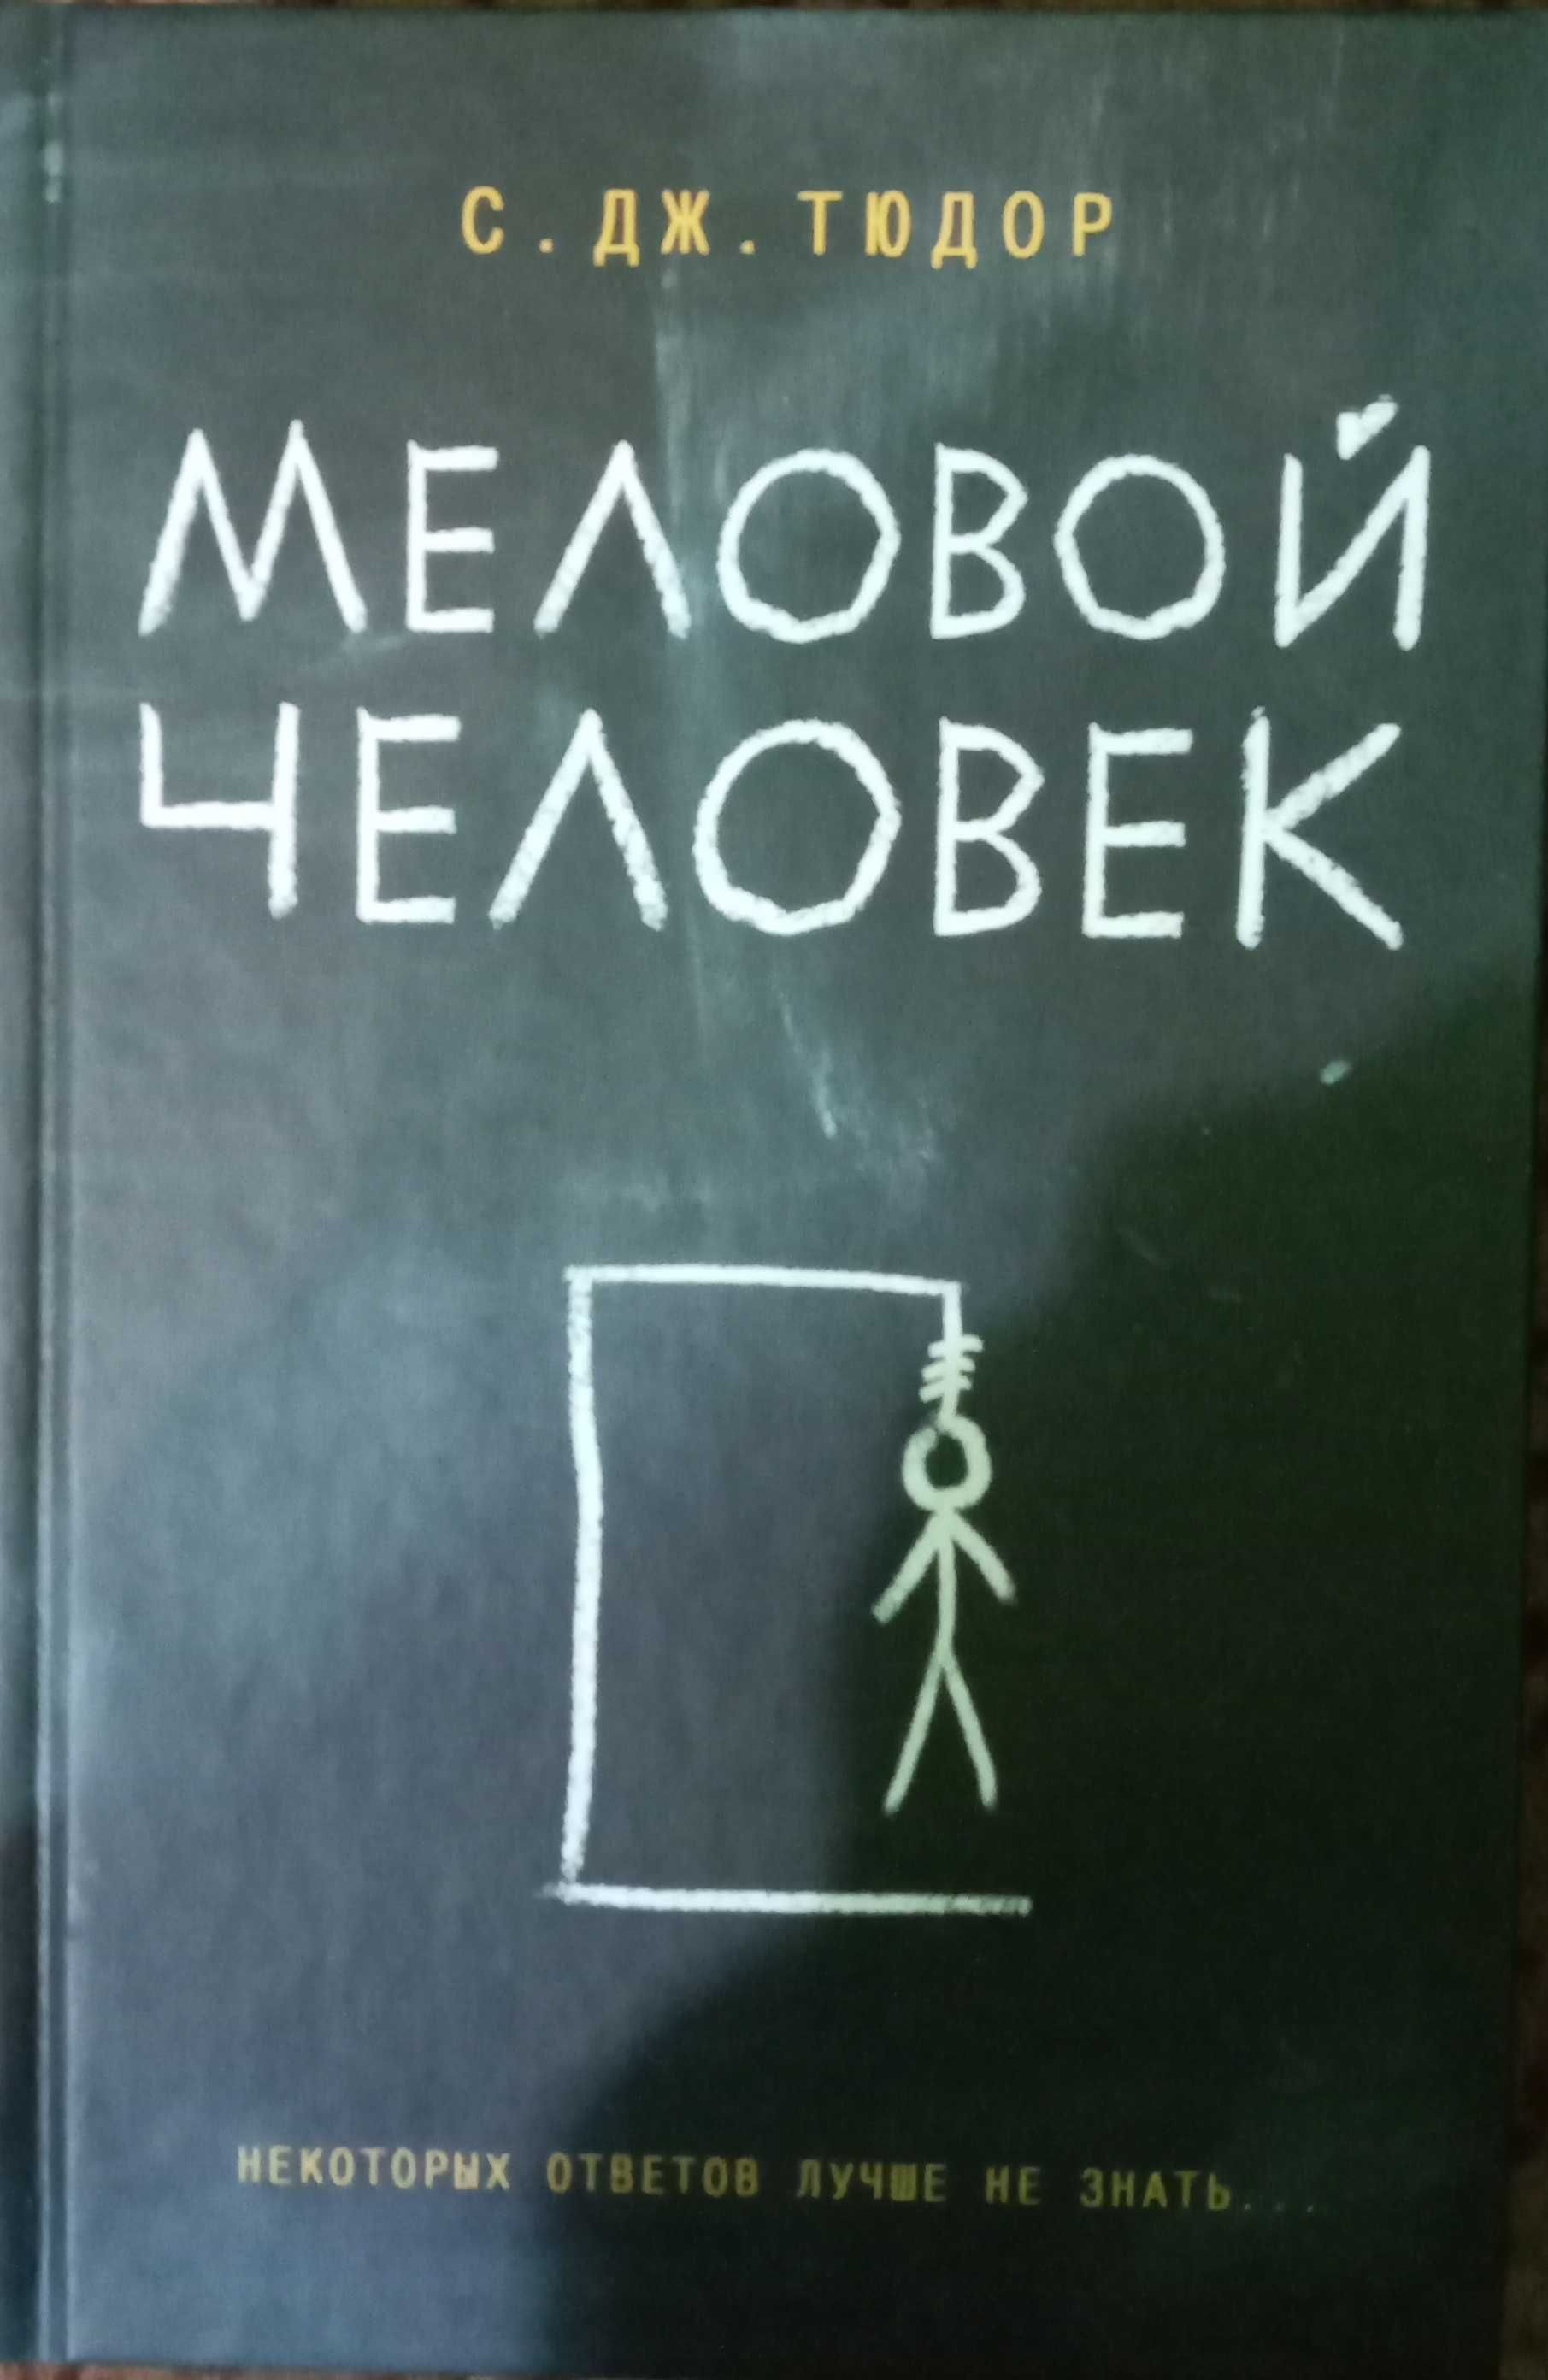 Книга "Меловой человек"  С. Тюдор